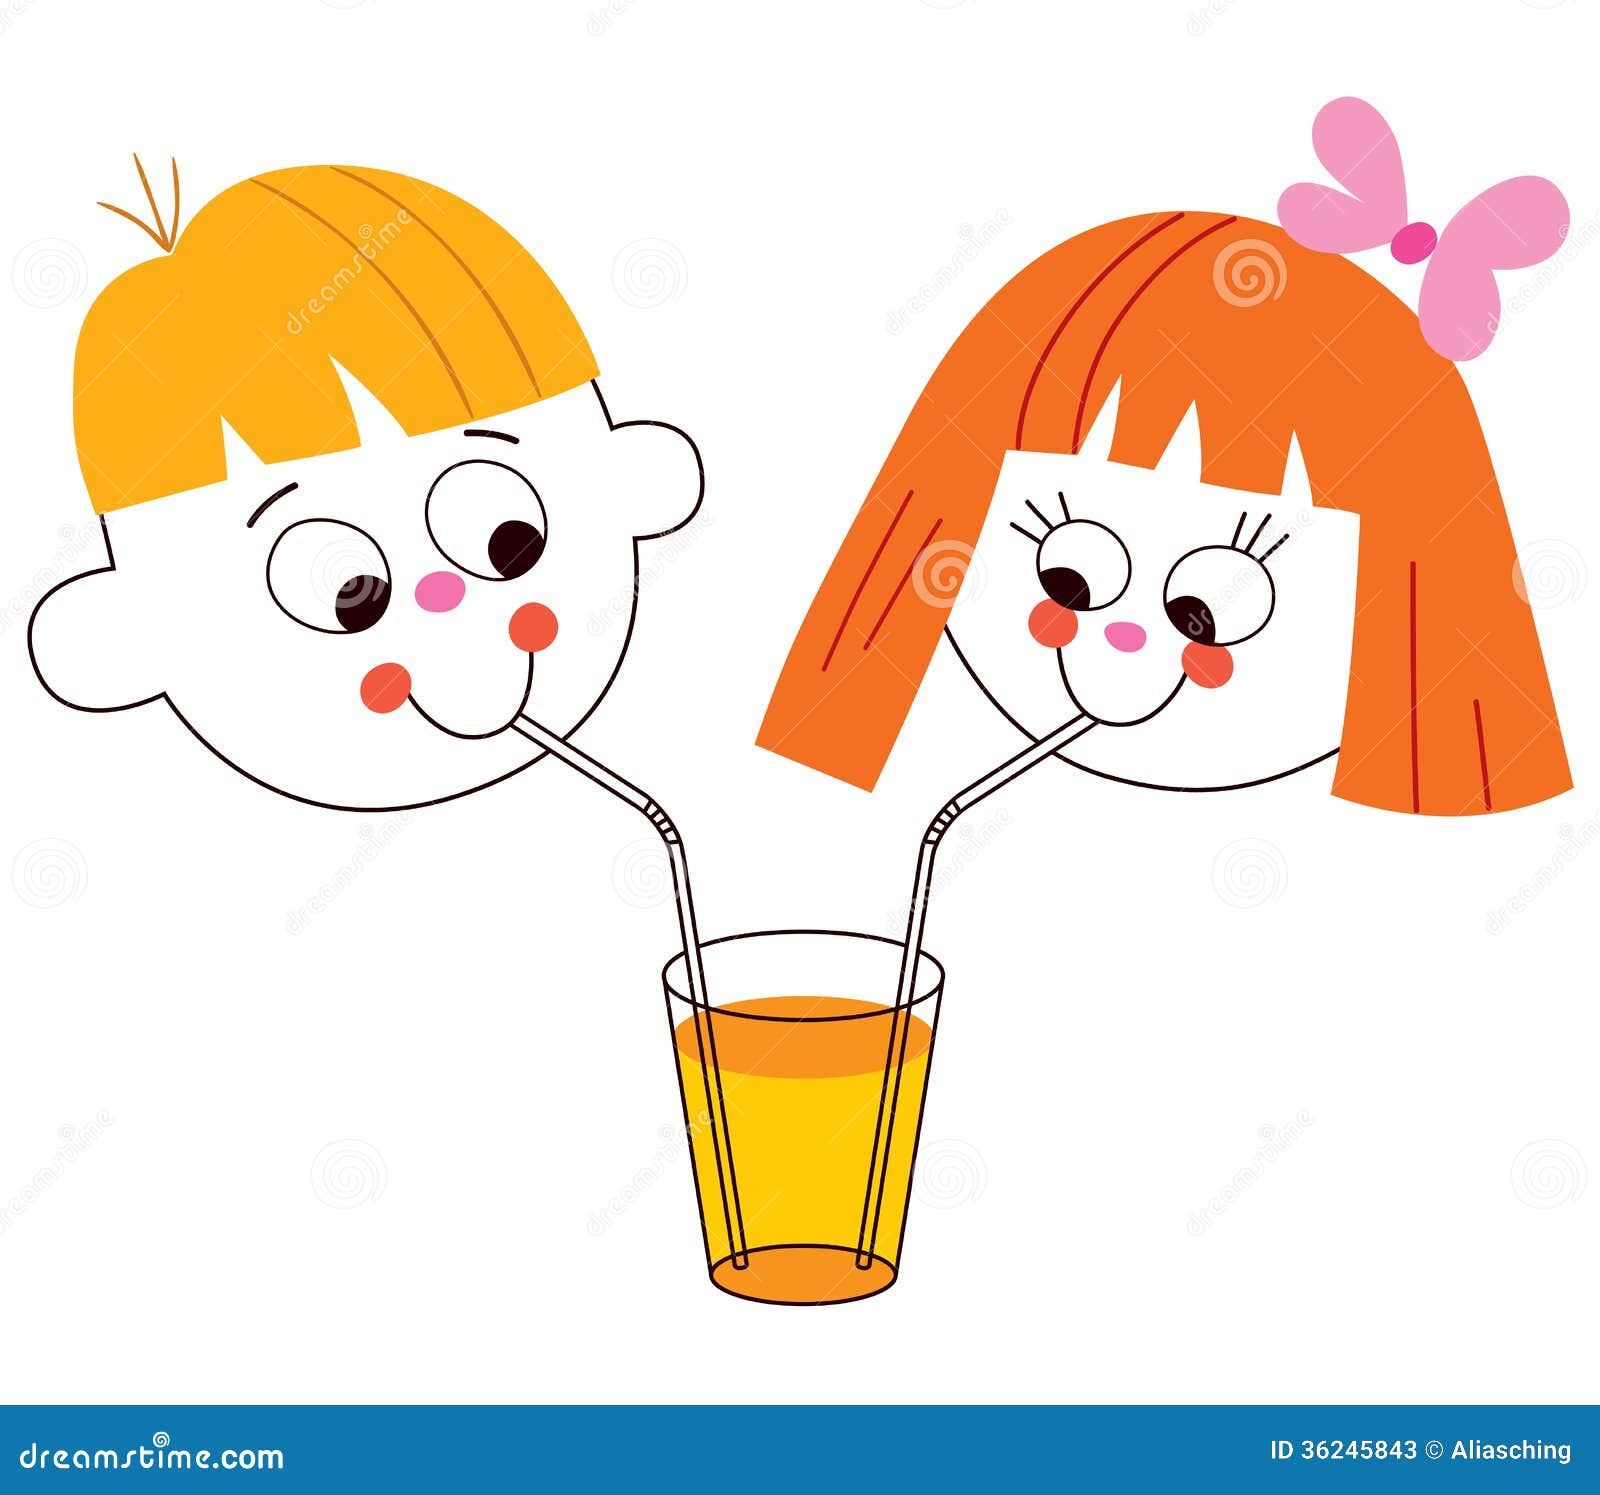 Пить и дуть. Мультяшка пьёт сок. Пьет сок из трубочки. Девочка пьет сок через трубочку. Сок мультяшный.